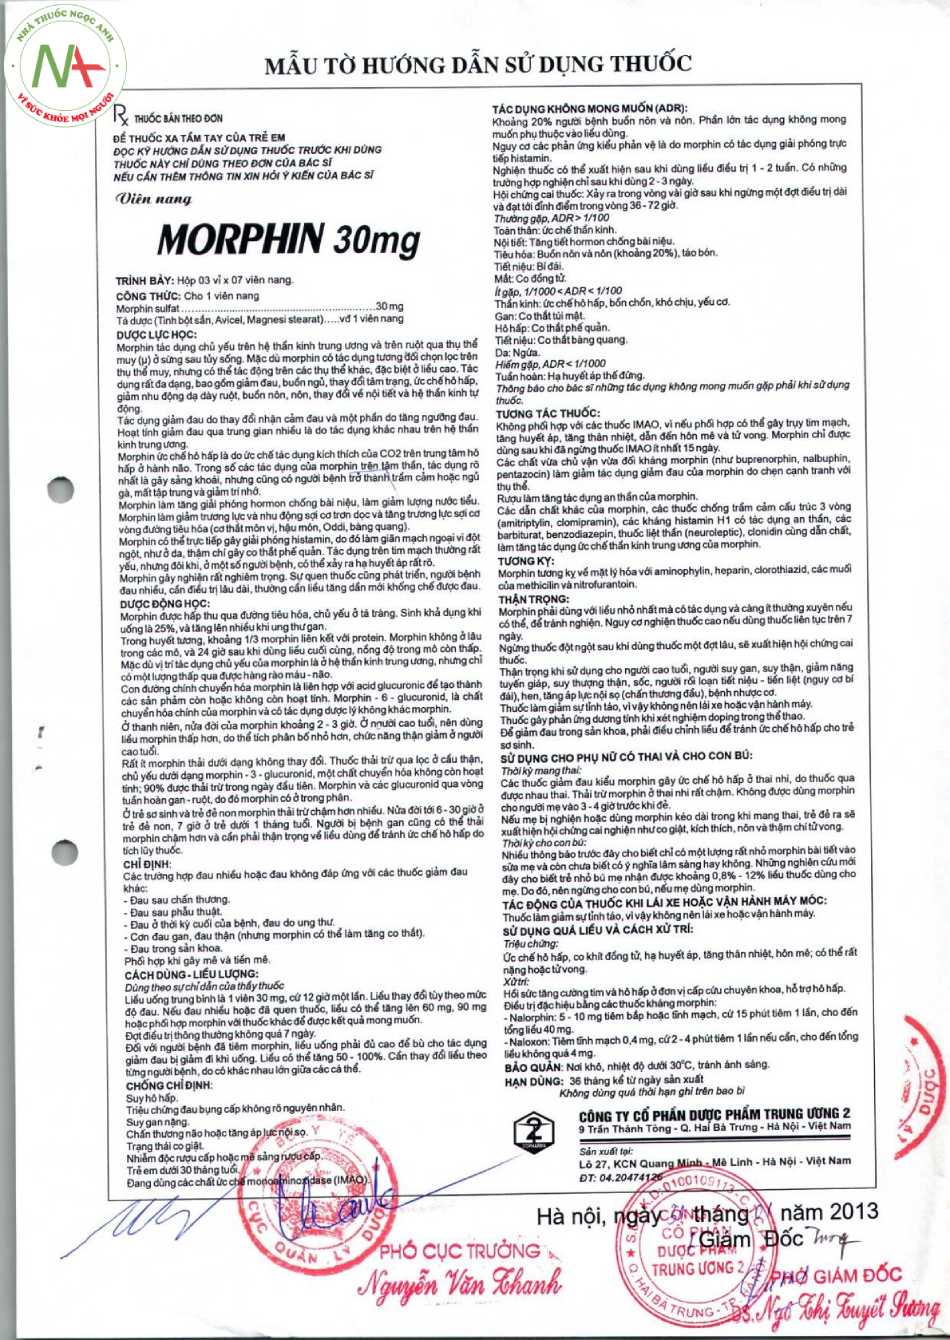 Hướng dẫn sử dụng thuốc Morphin 30mg